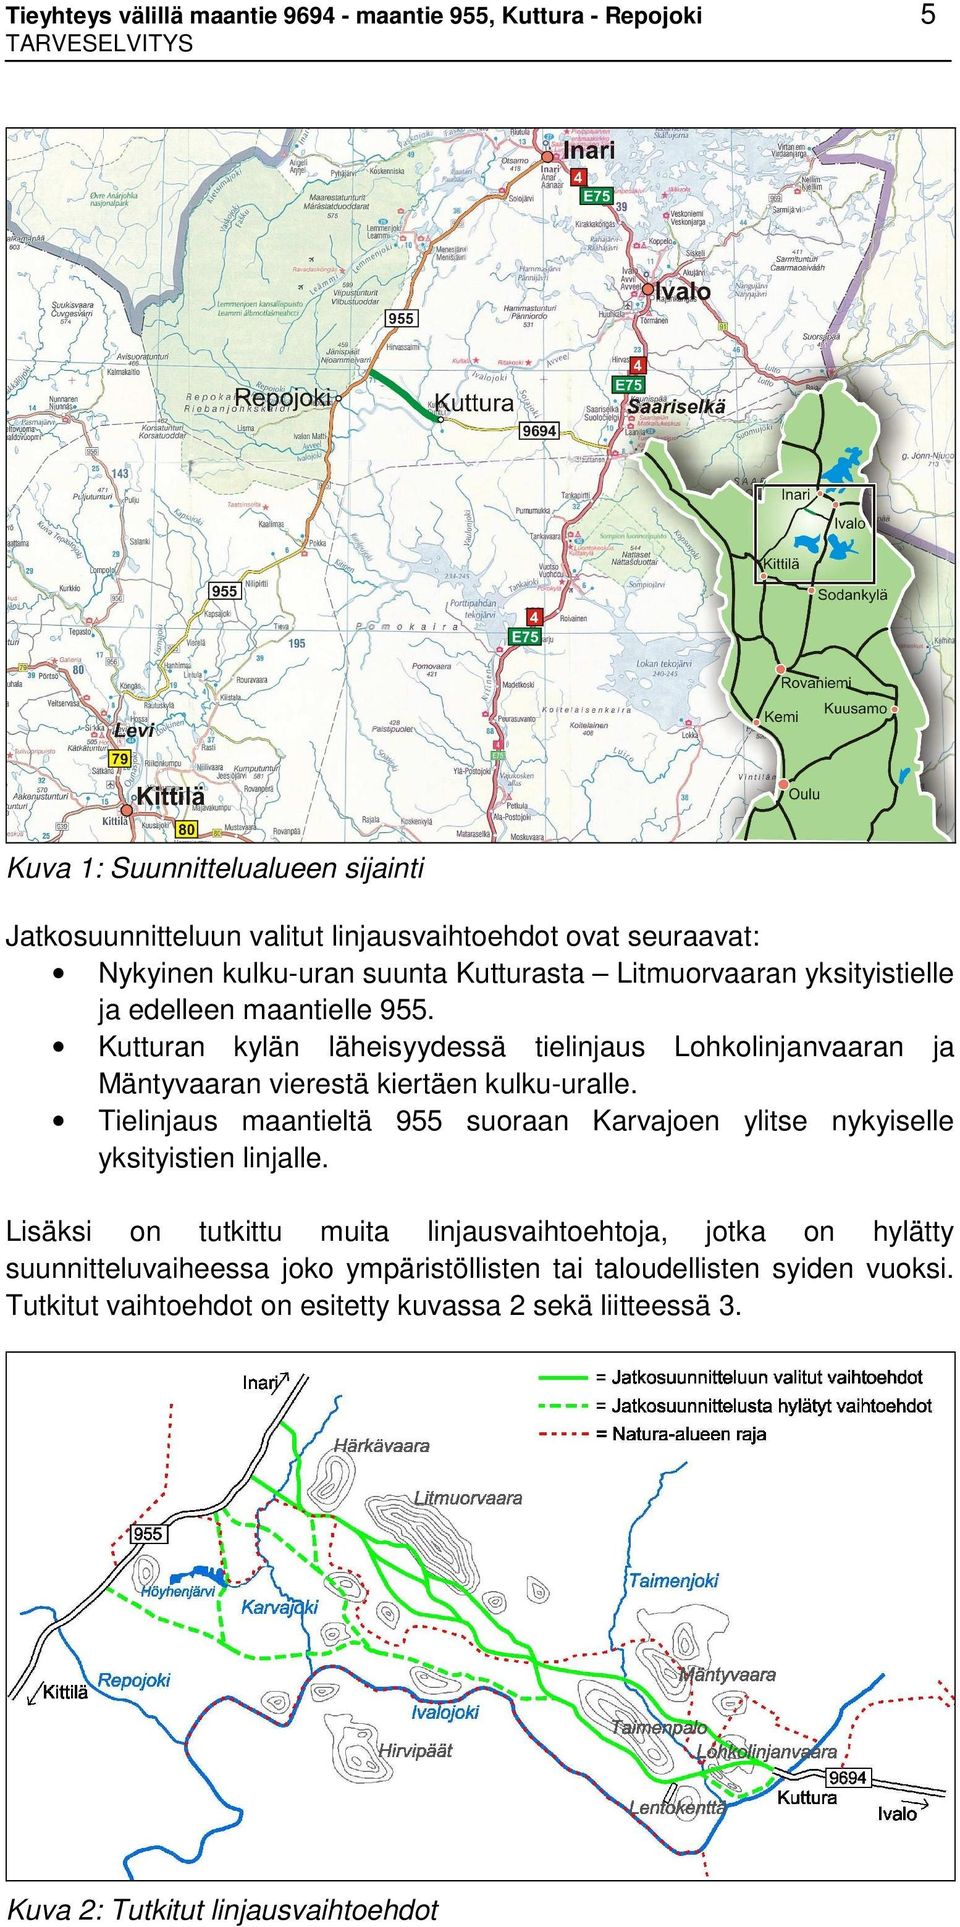 Kutturan kylän läheisyydessä tielinjaus Lohkolinjanvaaran ja Mäntyvaaran vierestä kiertäen kulku-uralle.